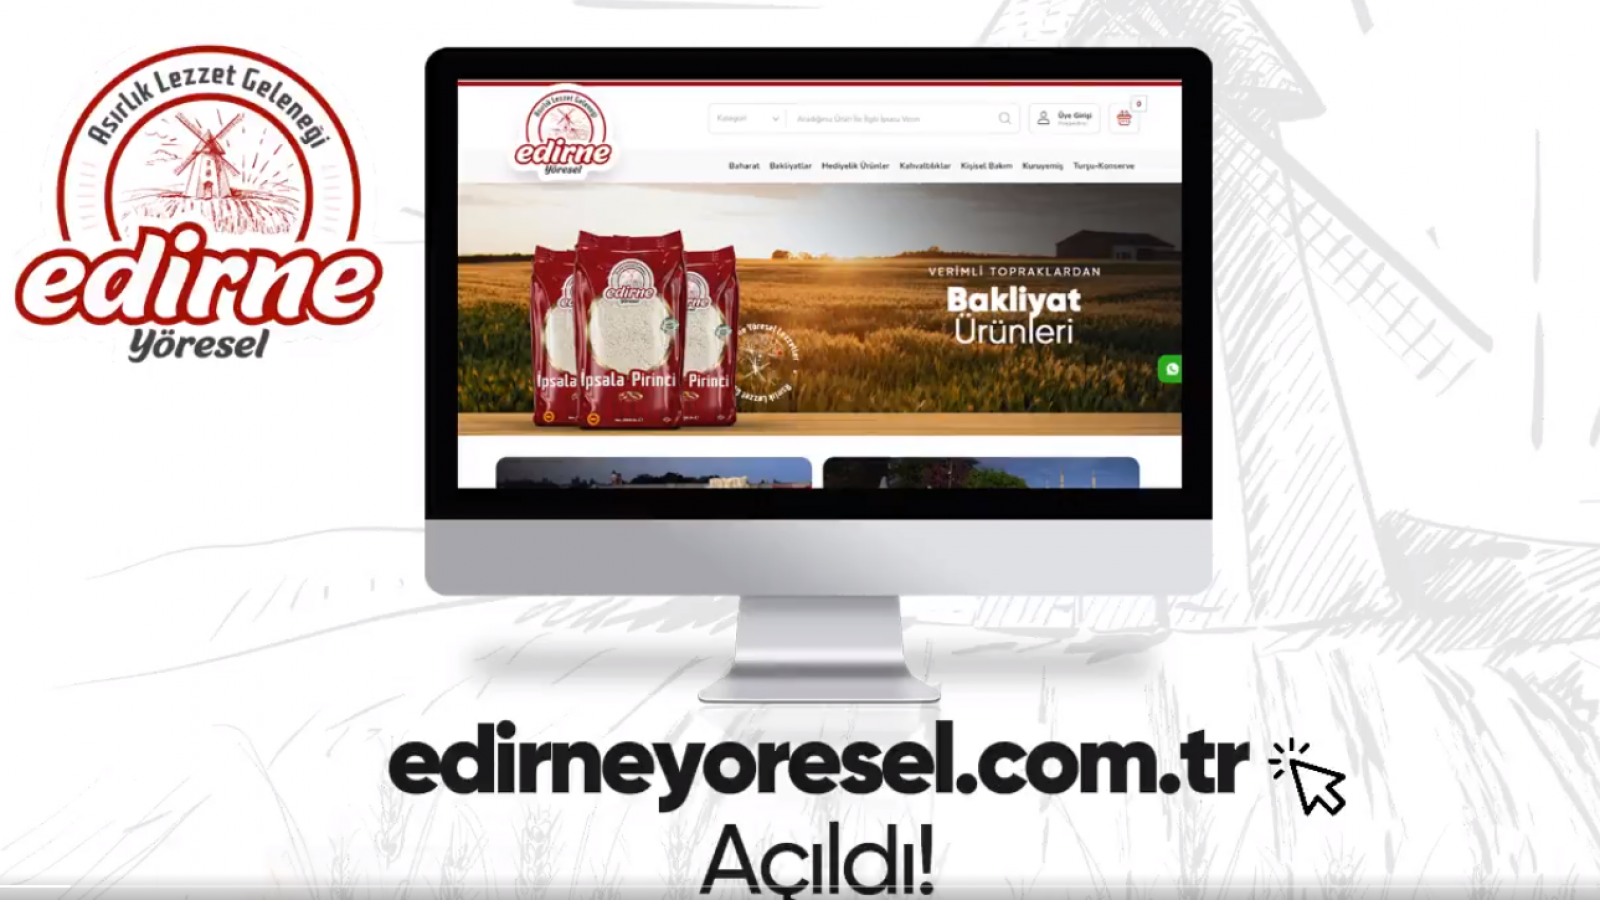 Edirne’nin yöresel ürünleri internet sitesinde;